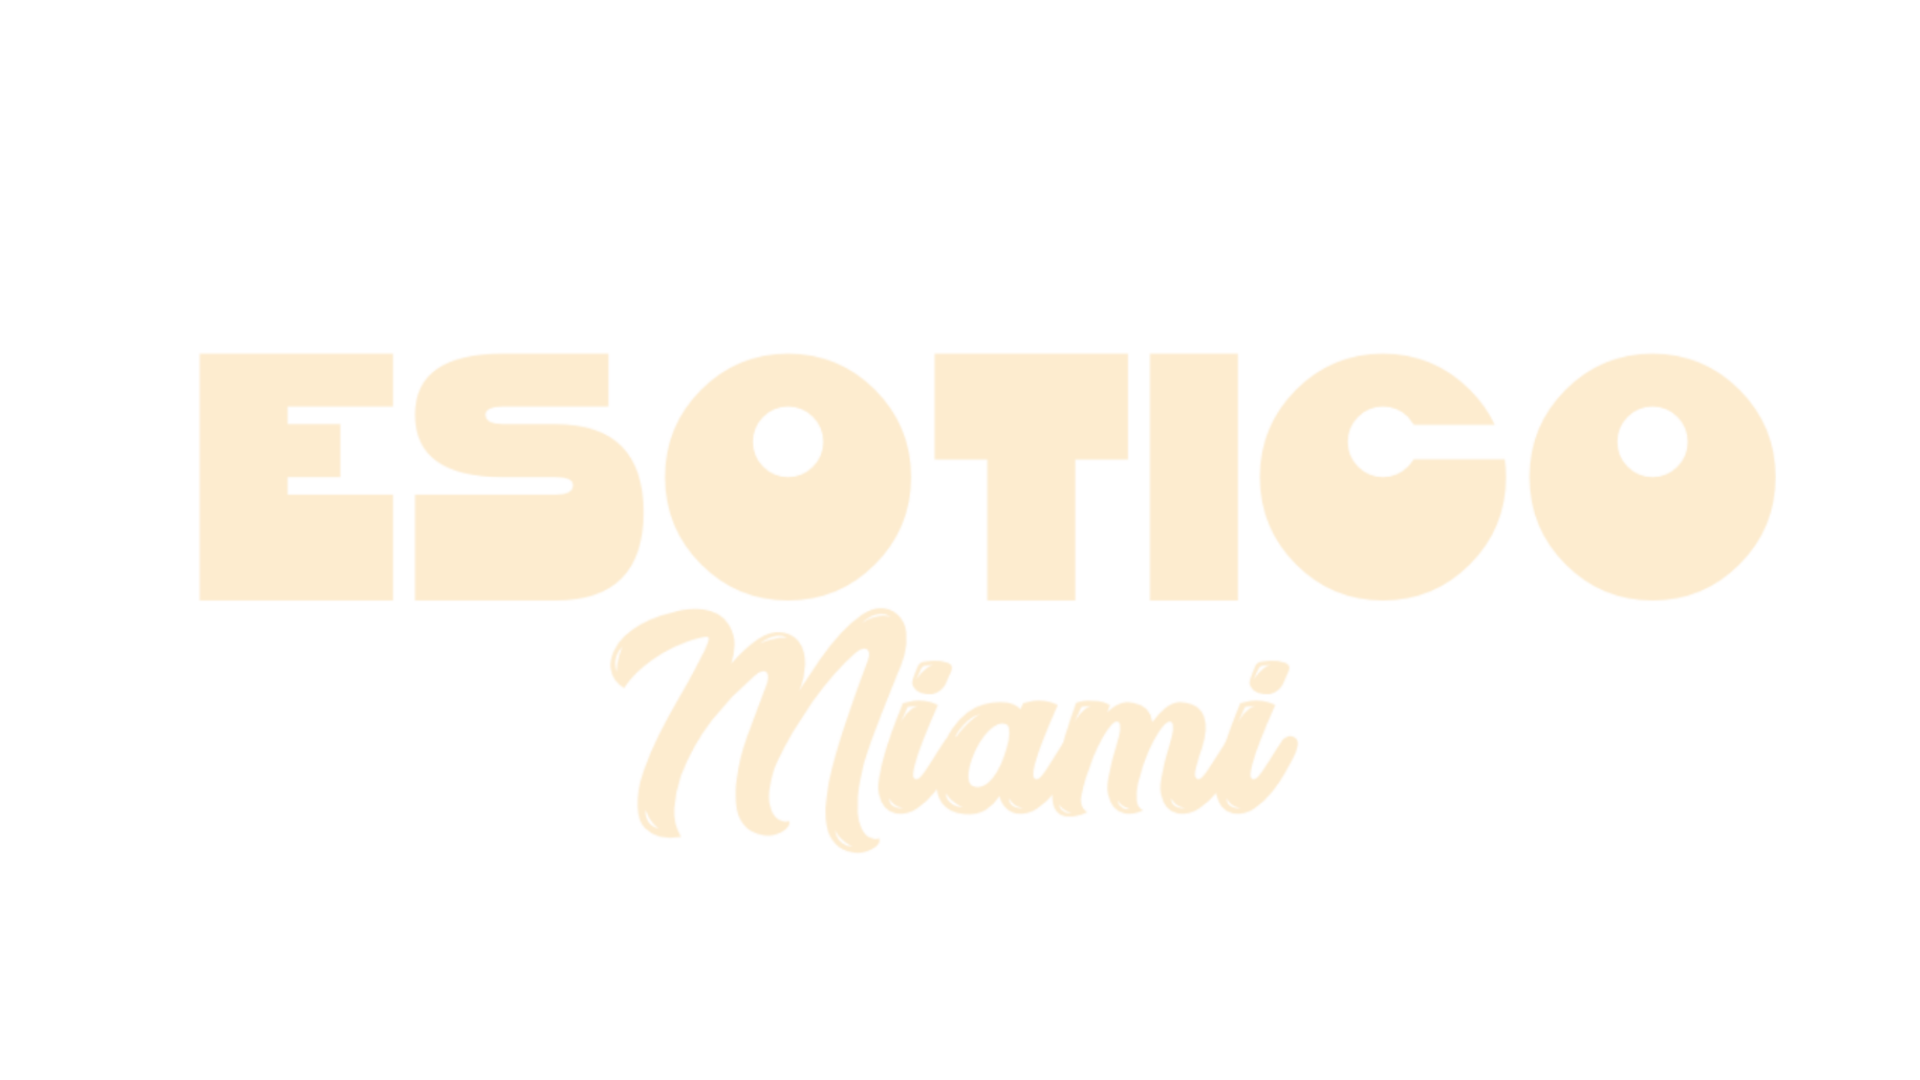 Esotico Miami Home